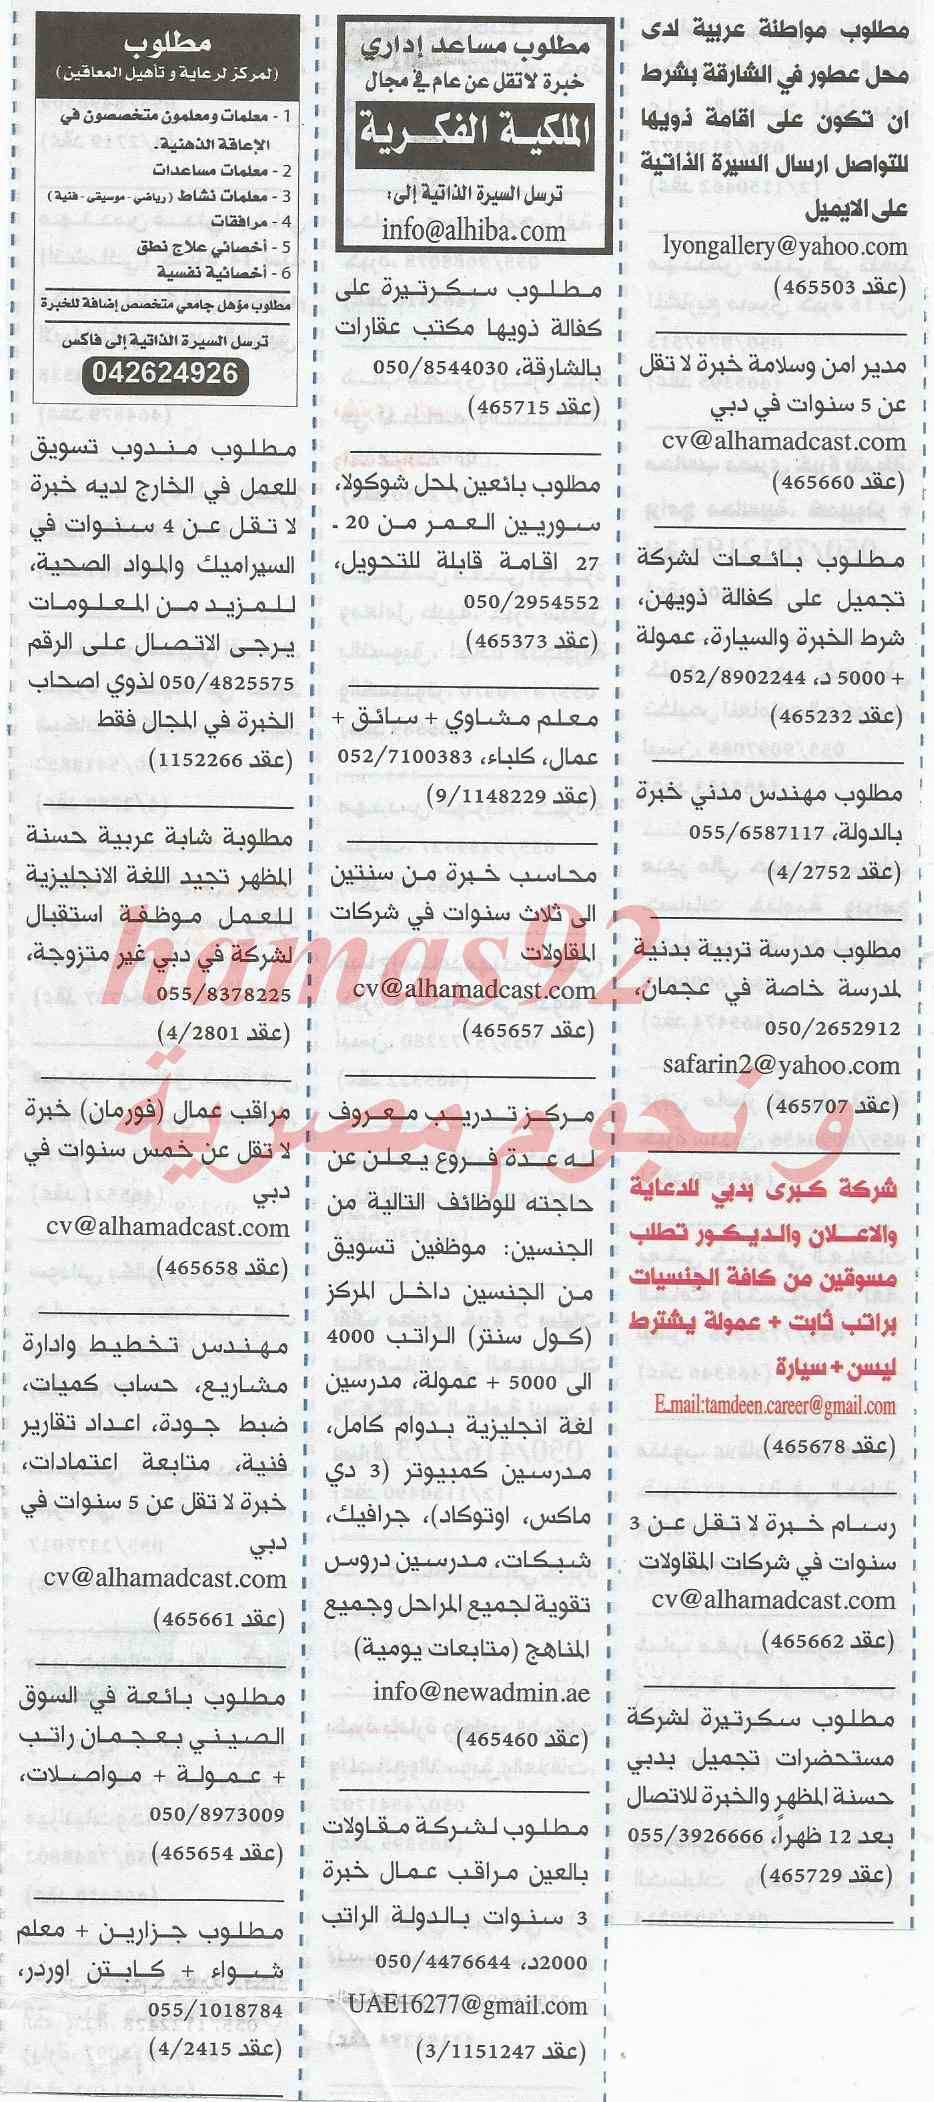 وظائف جريدة الخليج الامارات اليوم الجمعة 14-2-2014 ،، وظائف خالية في الامارات اليوم 14-2-2014